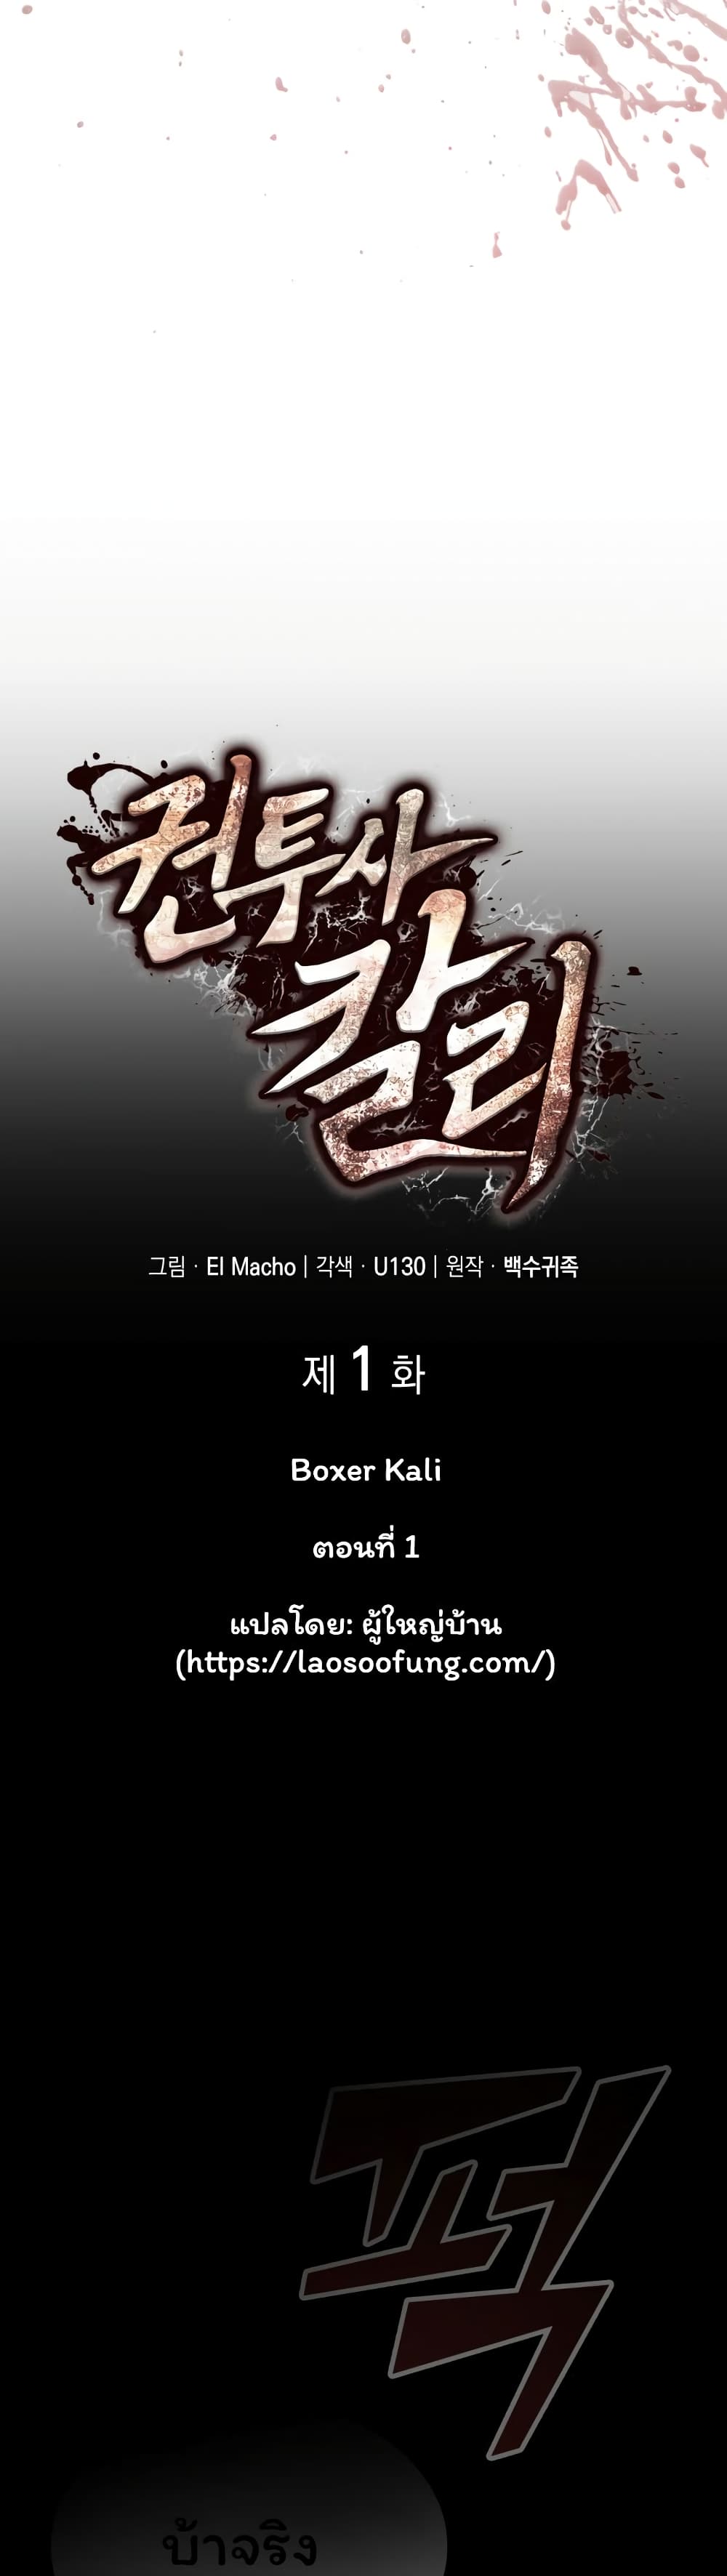 Boxer Kali 1-1